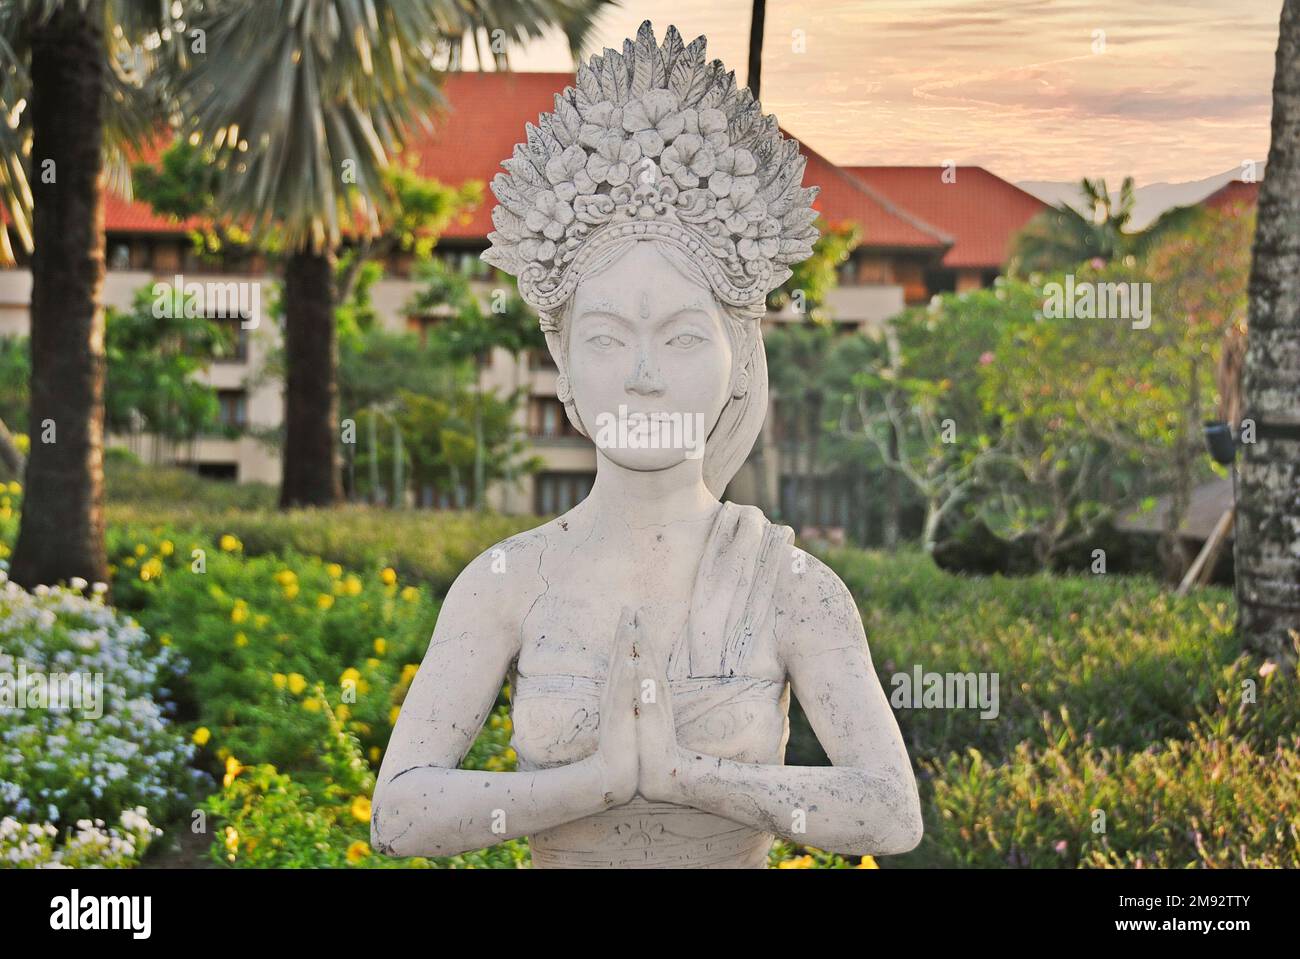 Traditionelle balinesische Statue in einem öffentlichen Park. Bali, Indonesien. Stockfoto